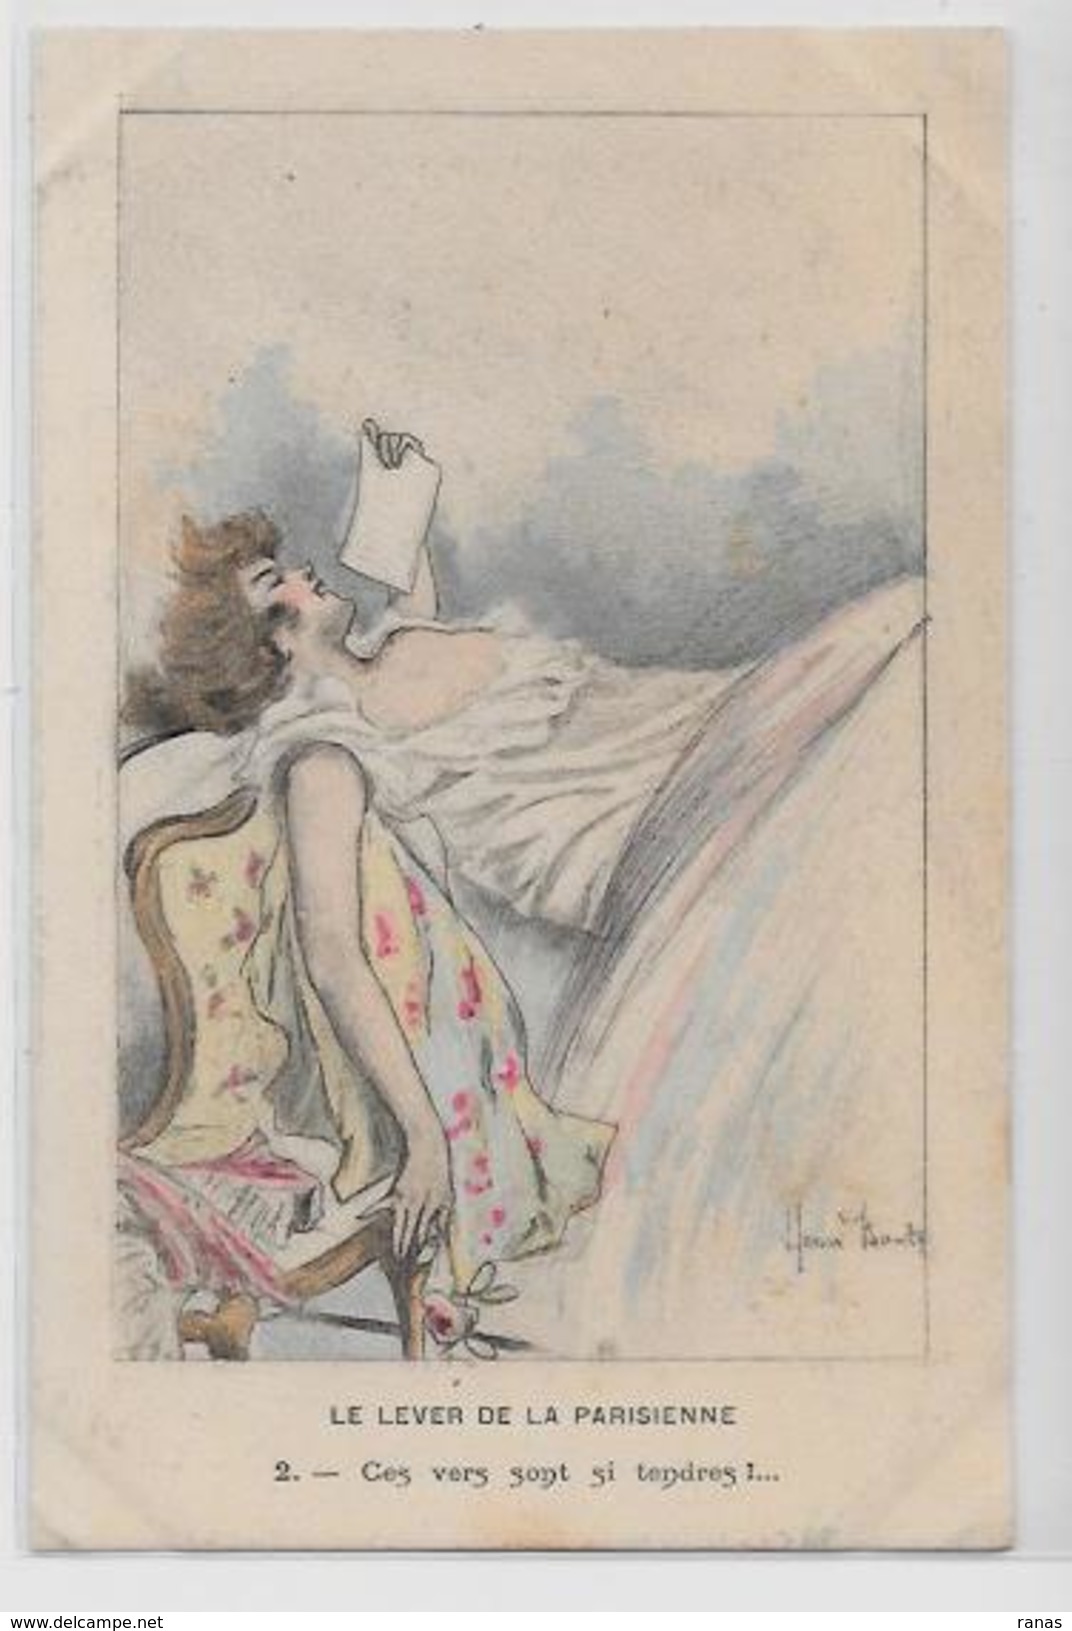 CPA Henri BOUTET Art Nouveau Femme Pin Up érotisme Non Circulé Girl Woman Scan Du Dos - Boutet